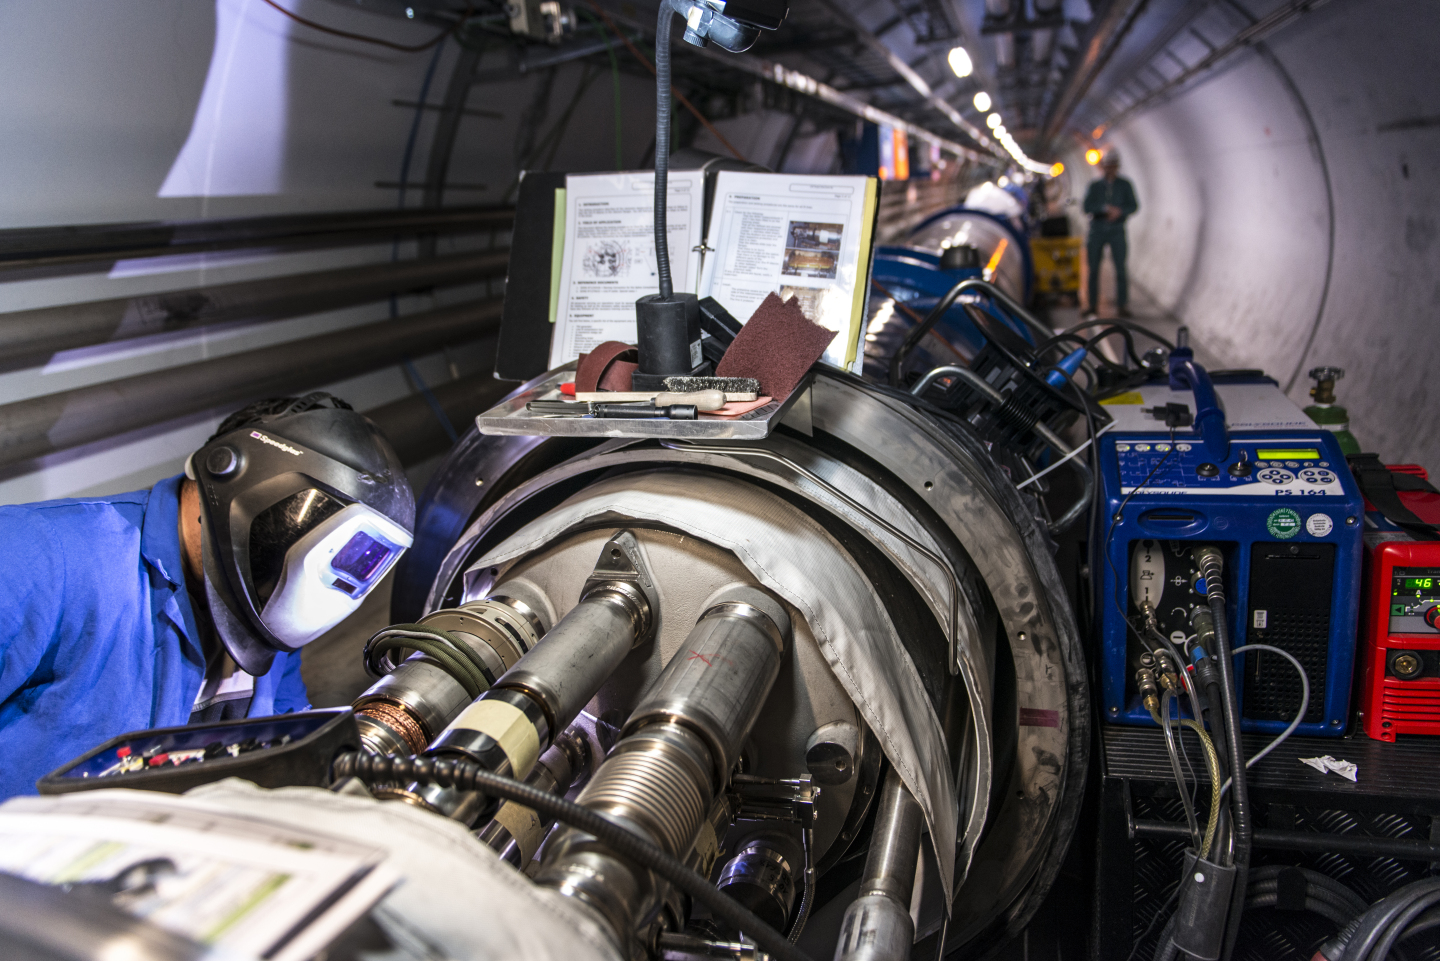 Un réveil plein d’énergie pour le LHC